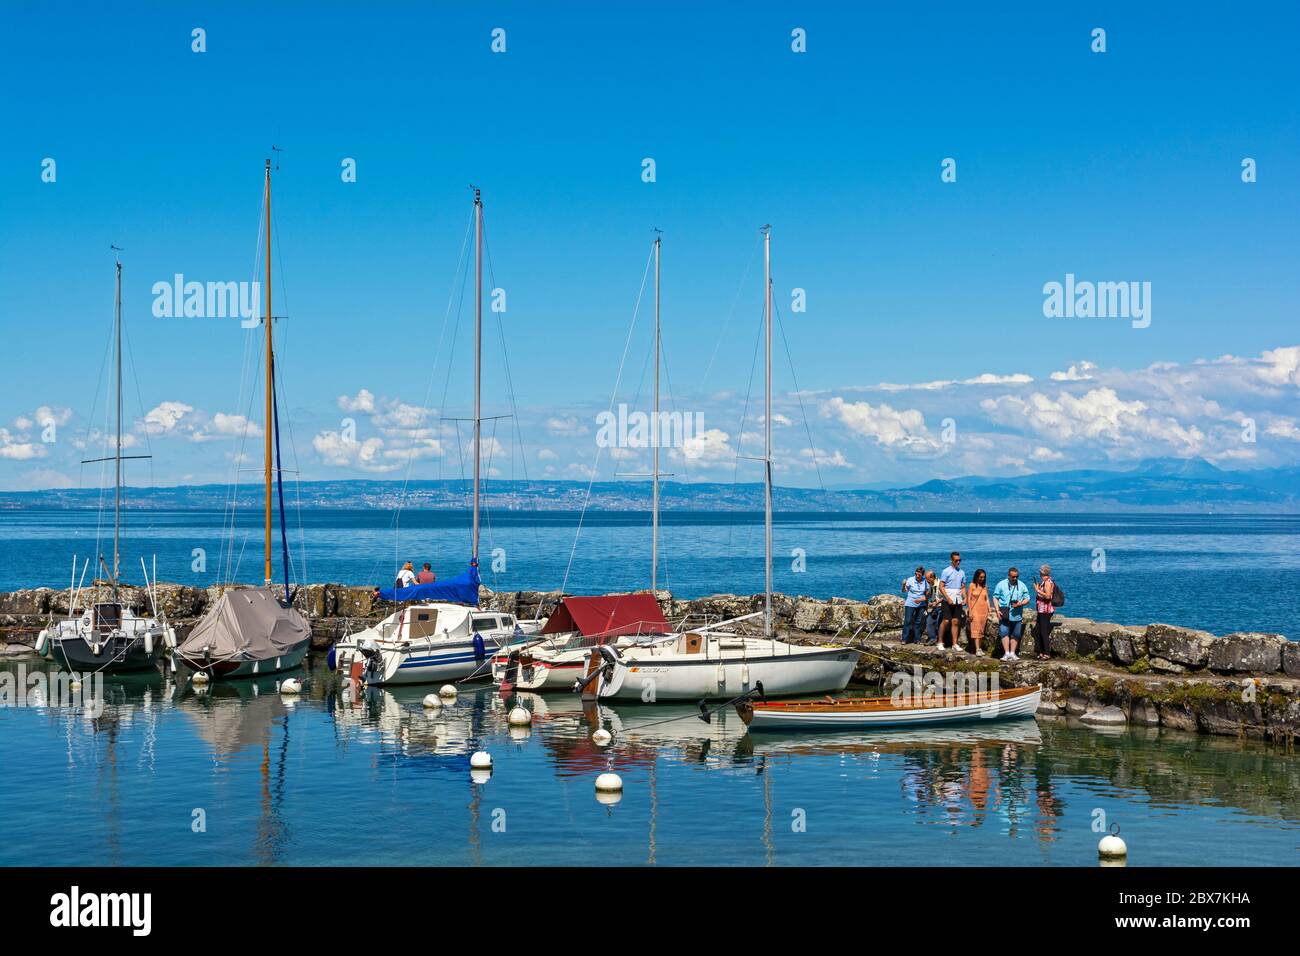 France, Yvoire, Port des Pecheurs (fishermen's harbor), Lake Geneva (Lac Leman), small sailboats Stock Photo